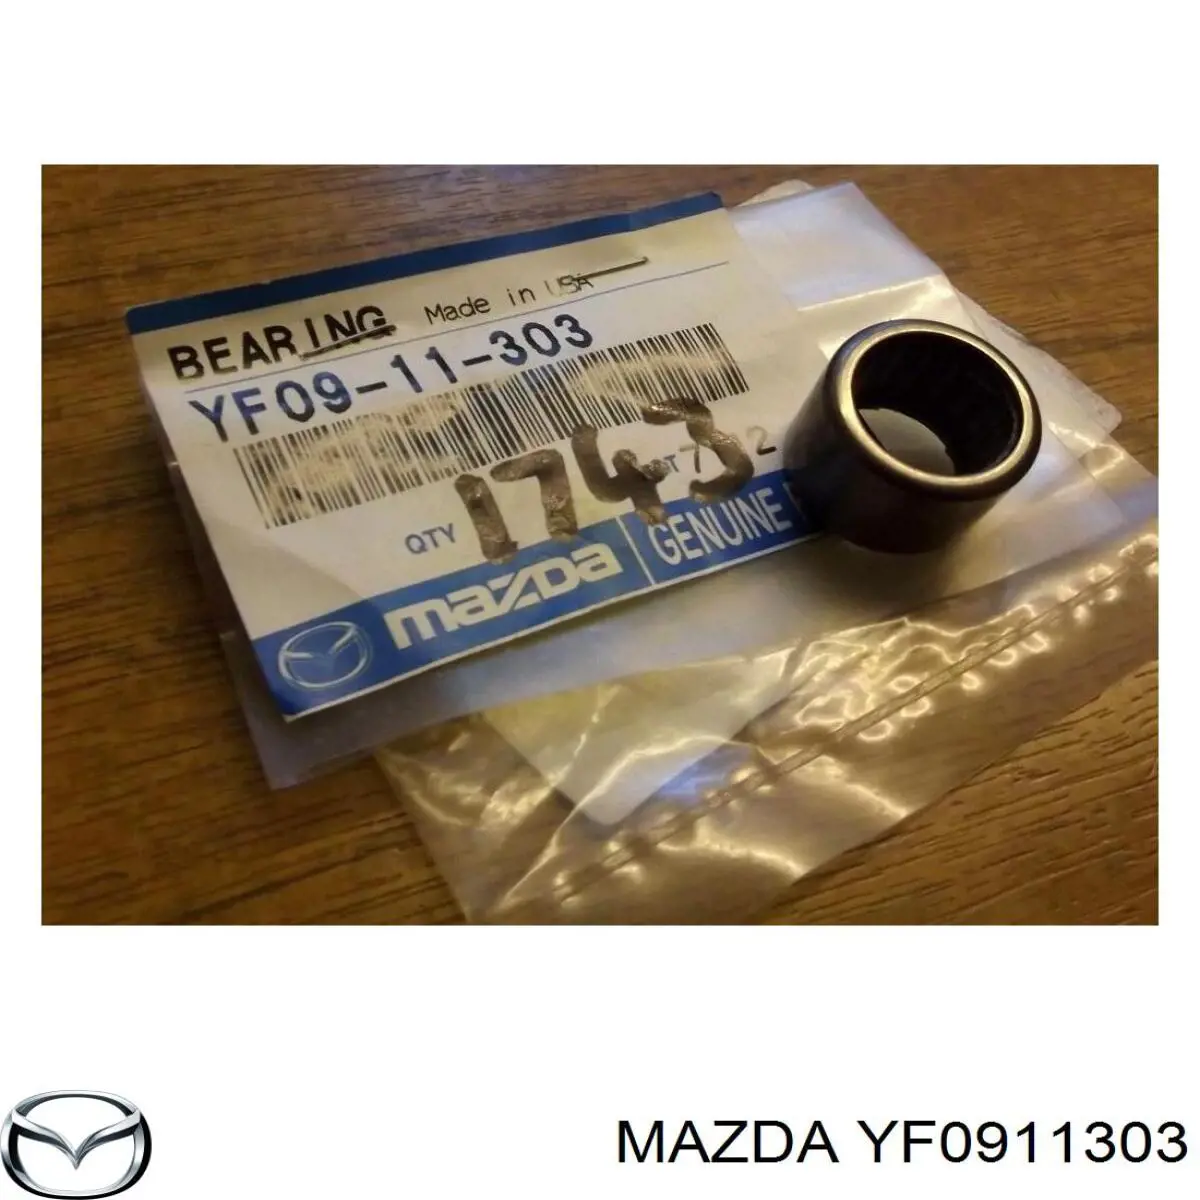 Опорний підшипник первинного валу КПП (центрирующий підшипник маховика) Mazda CX-7 (ER) (Мазда CX-7)